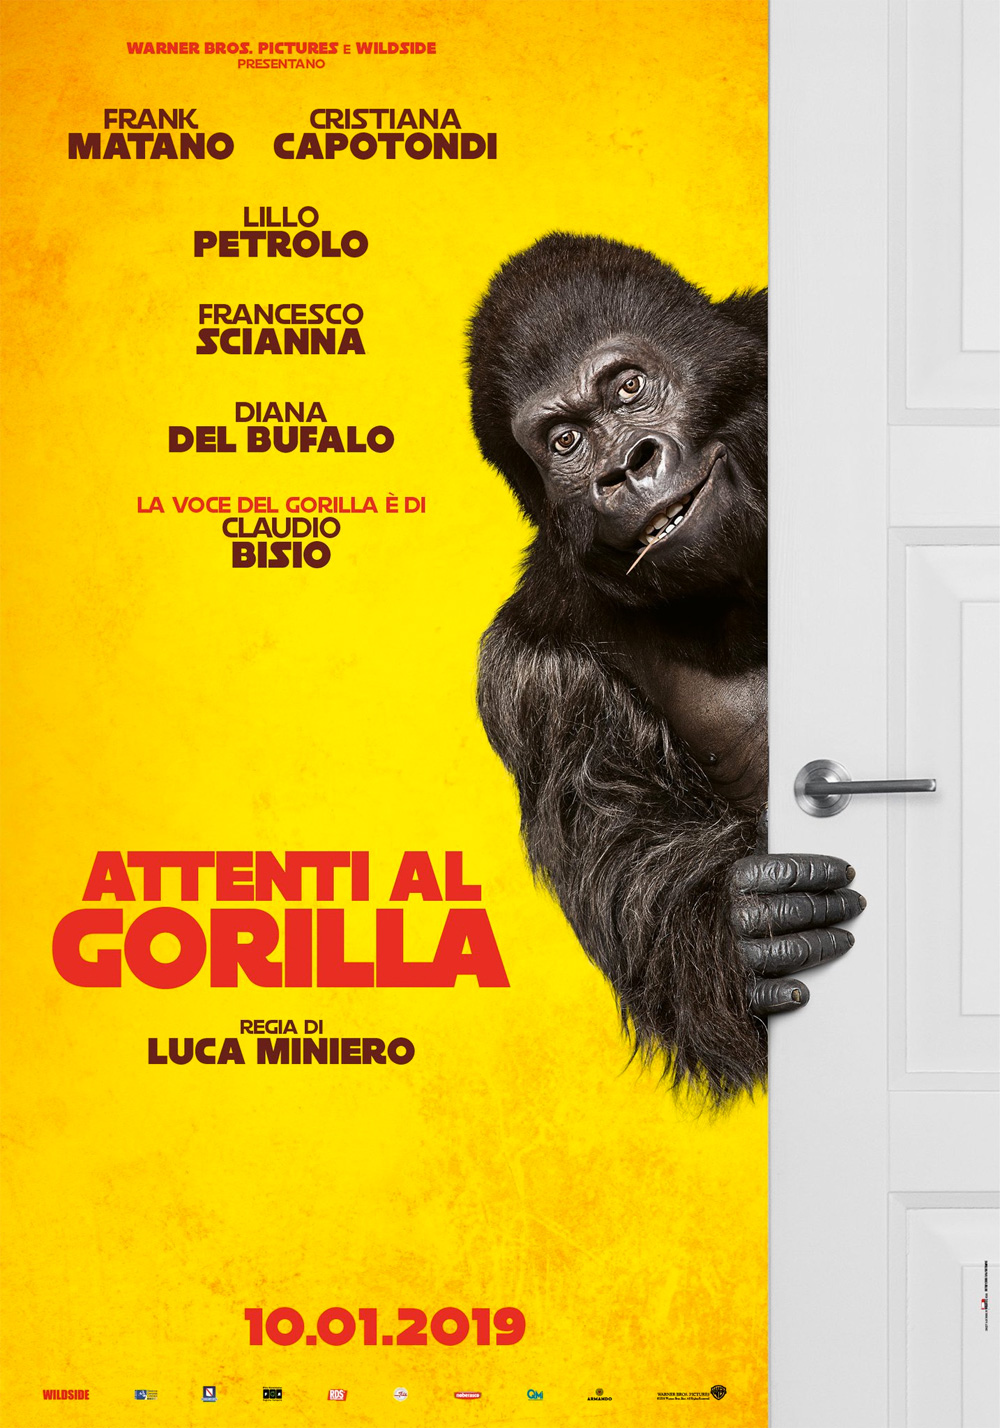  Dall'articolo: Attenti al gorilla, il poster del film.